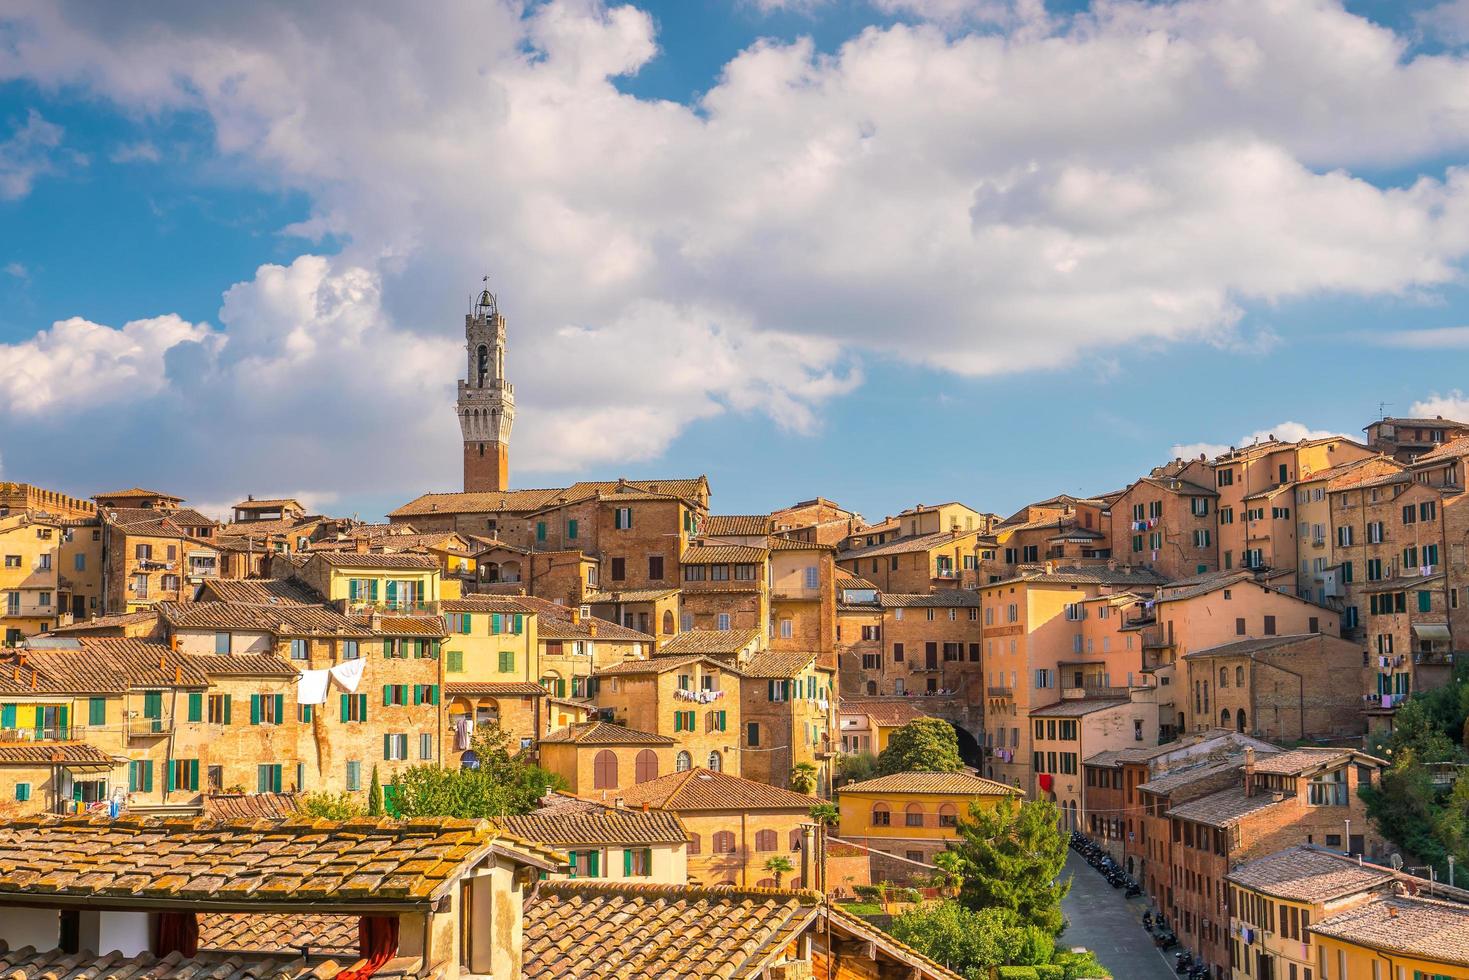 Downtown Siena skyline  in Italy photo